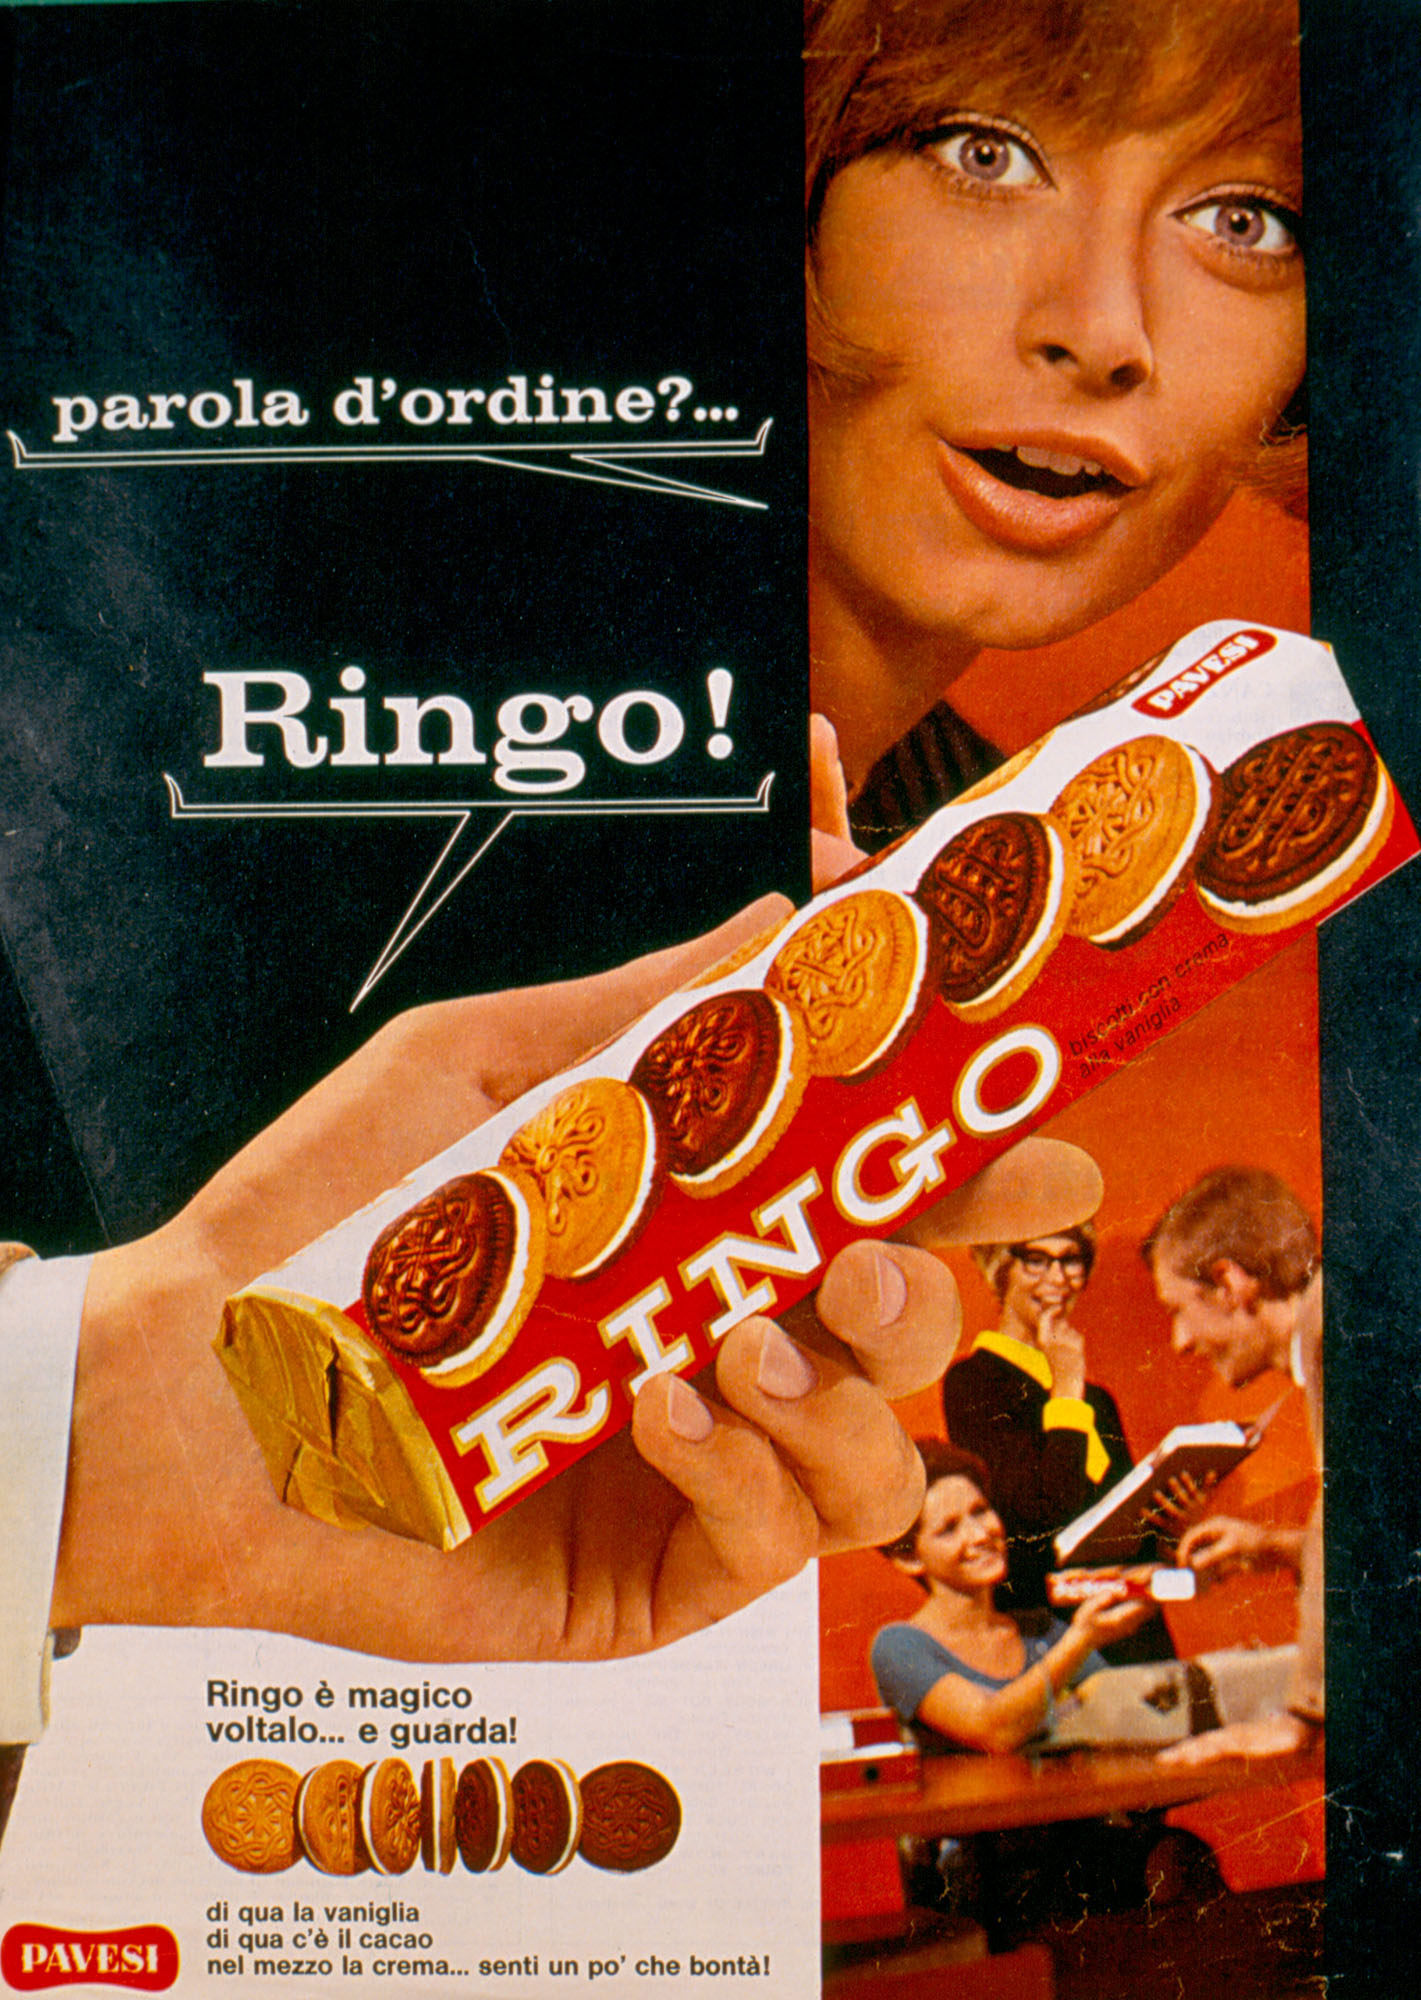 Press advertising - Parola d'ordine_Ringo!, 1969 [Password_Ringo!, 1969]